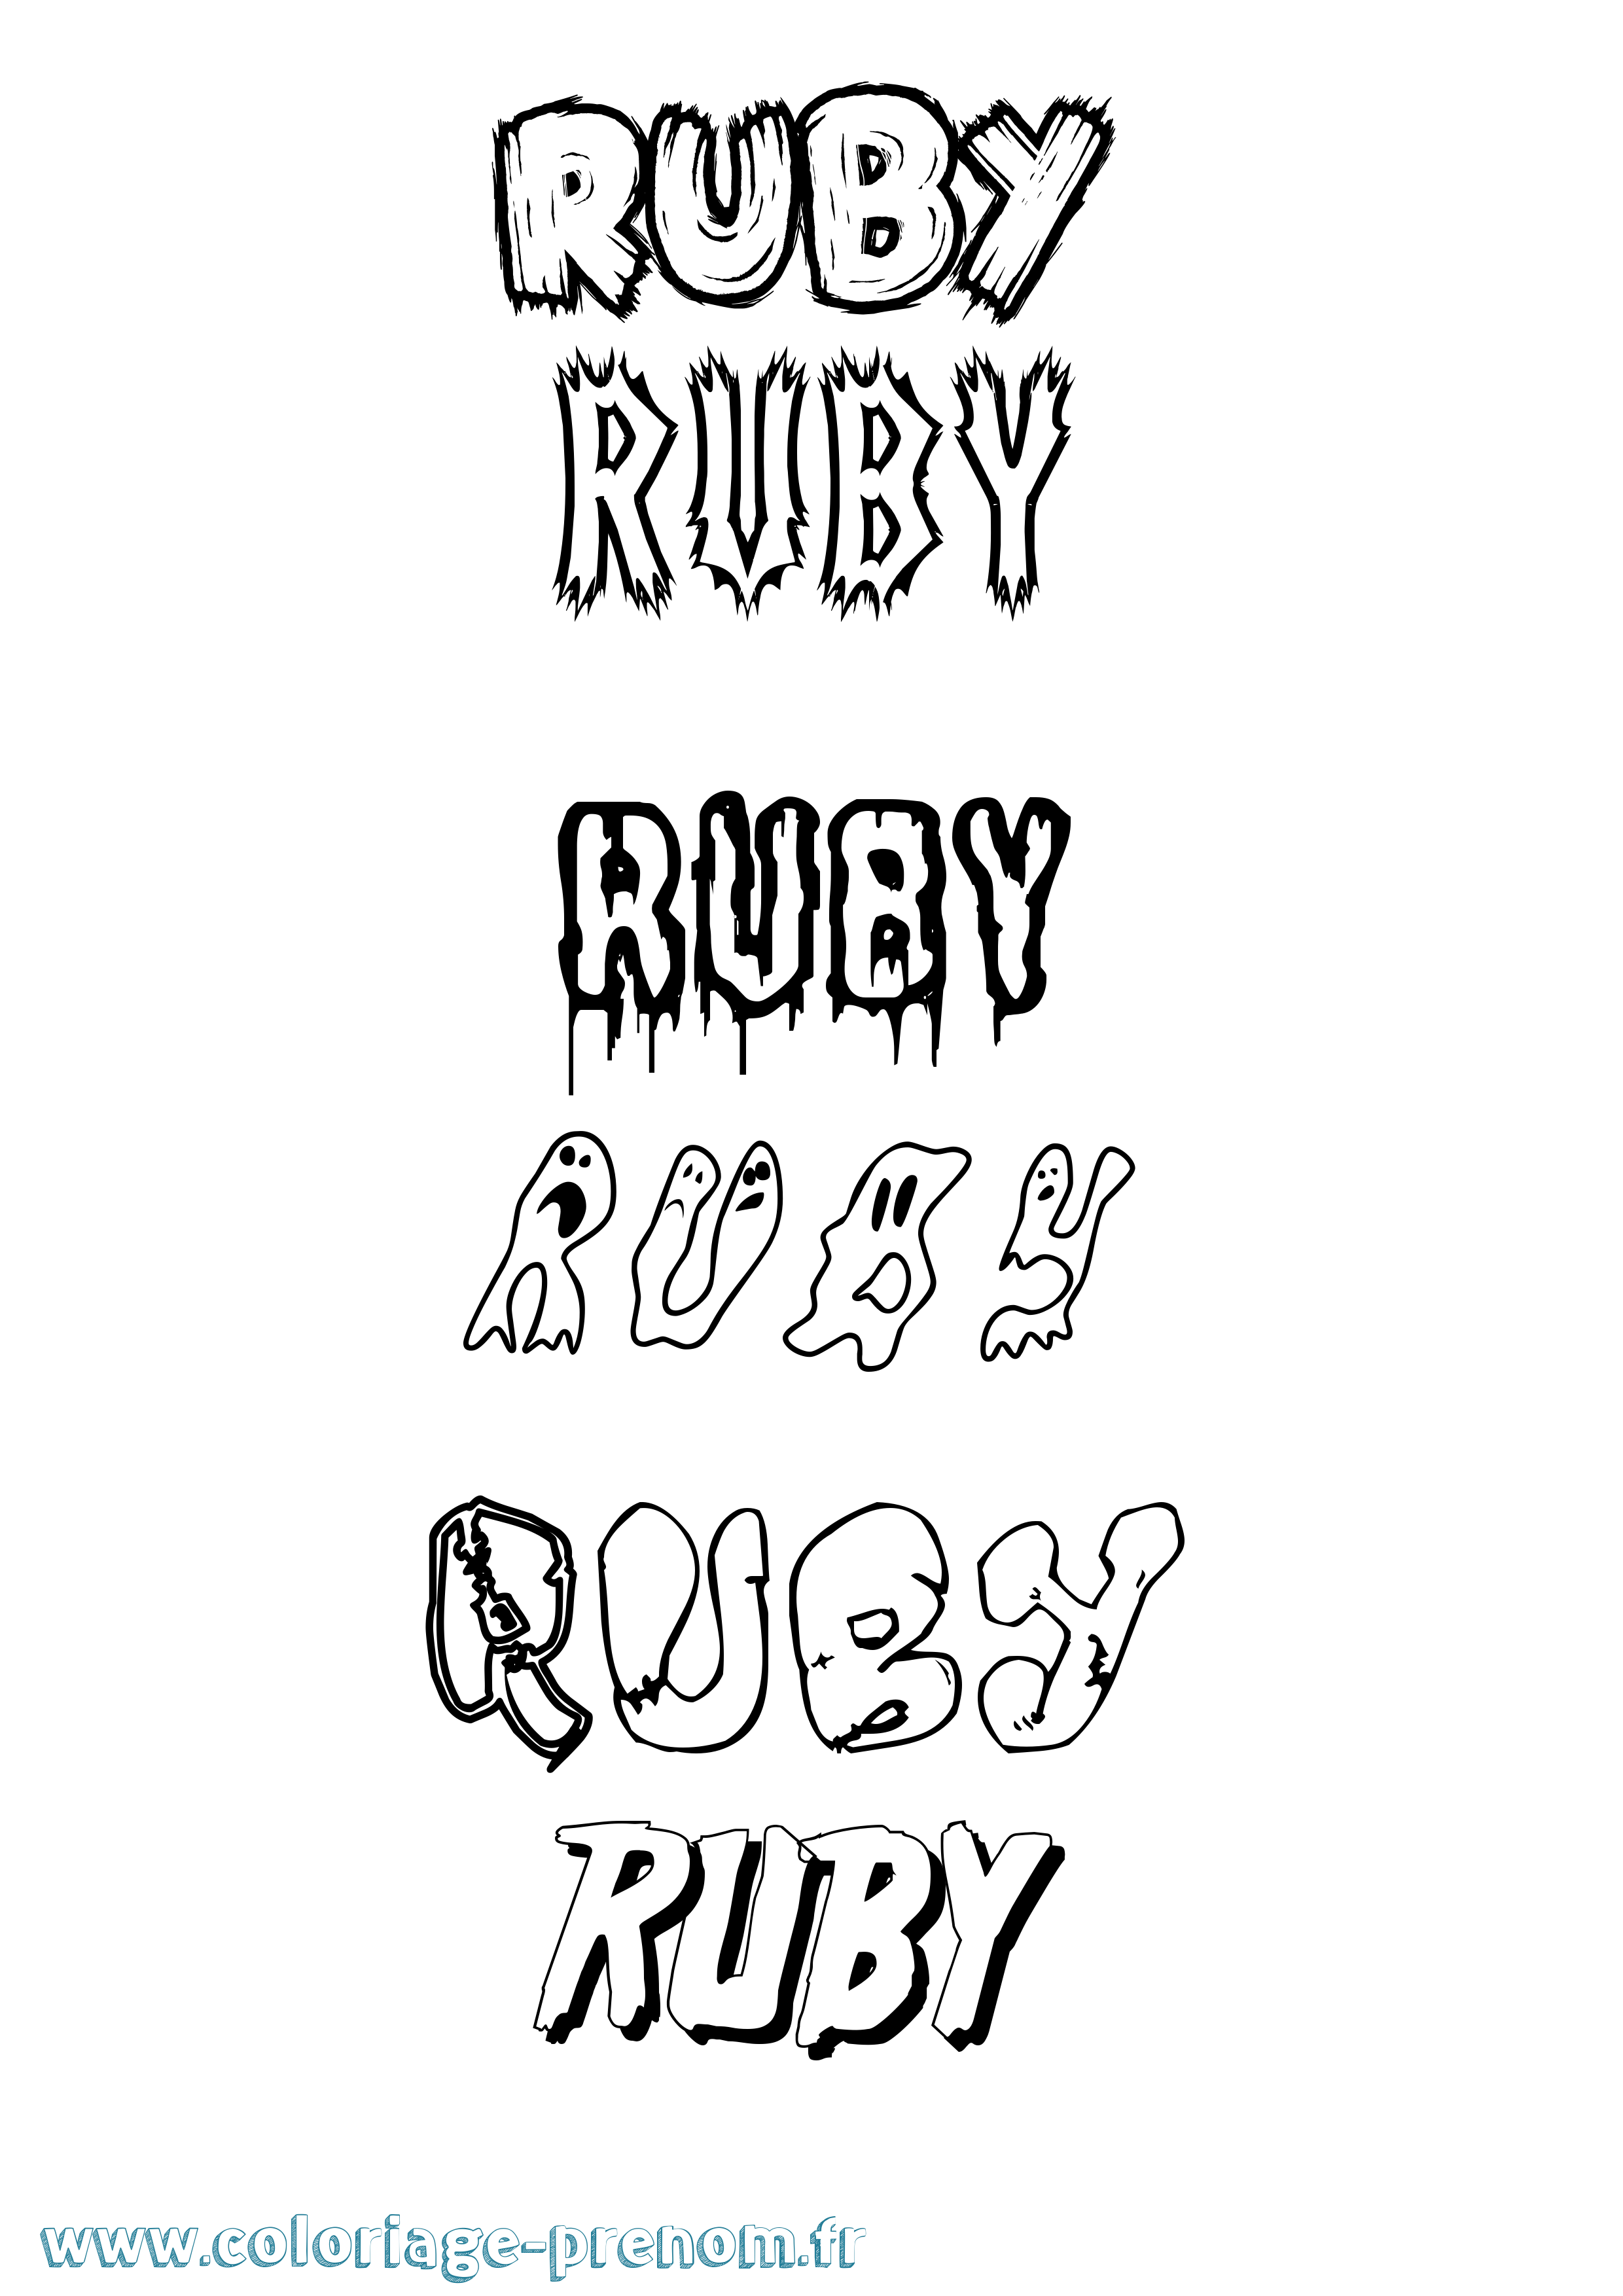 Coloriage prénom Ruby Frisson